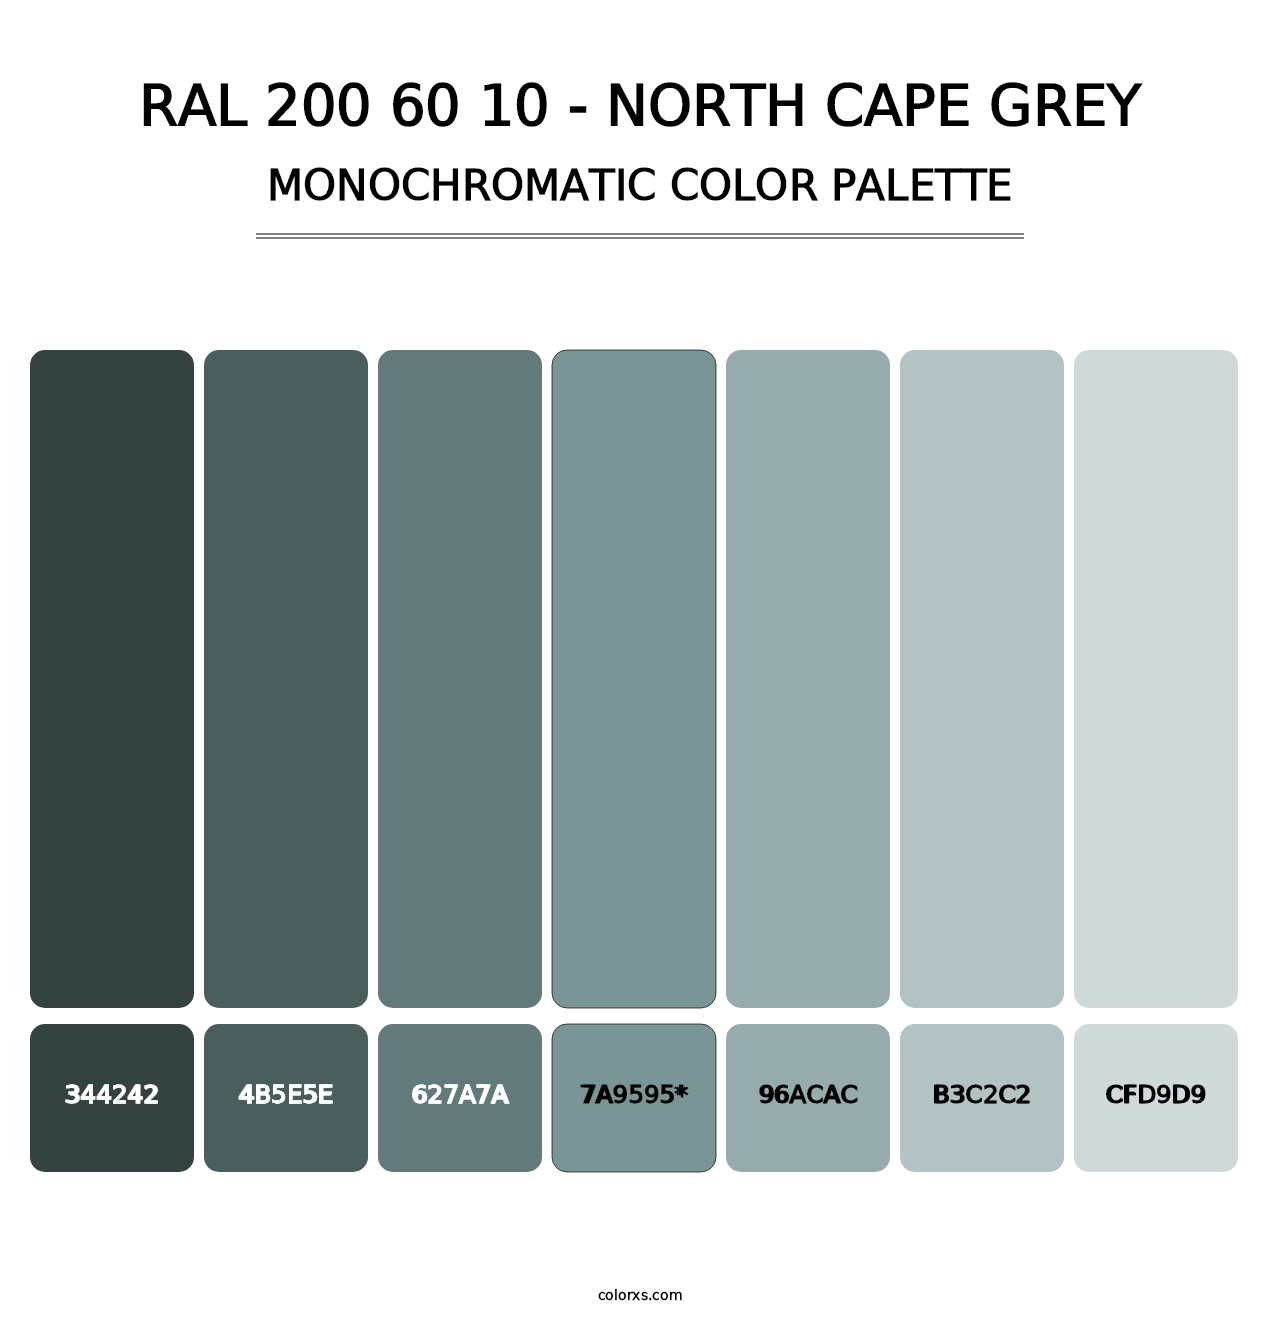 RAL 200 60 10 - North Cape Grey - Monochromatic Color Palette